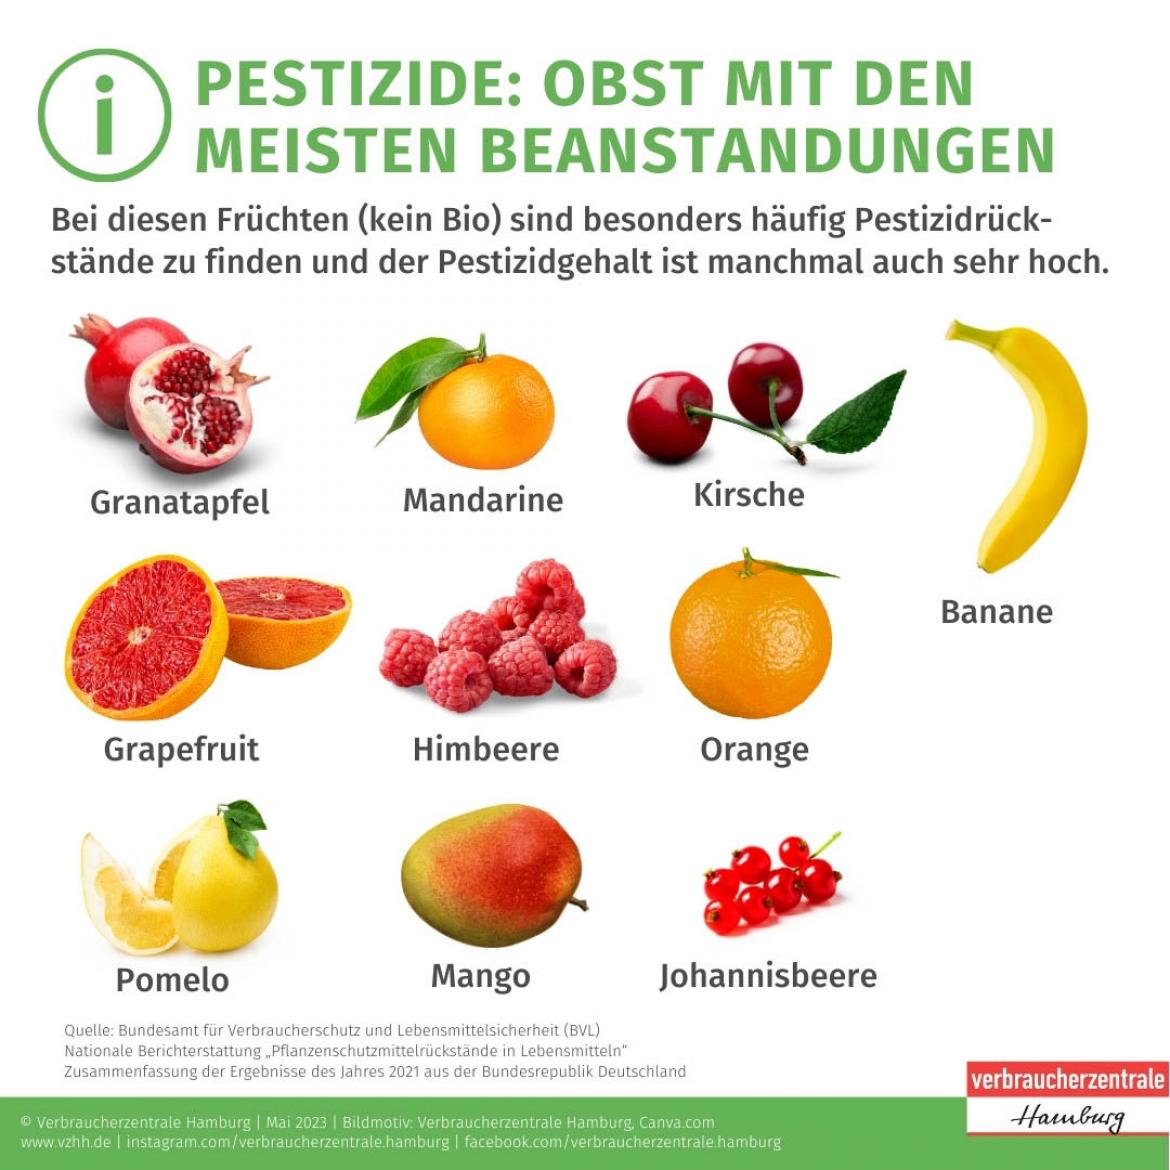 Dieses Obst (kein Bio) wurde am meisten wegen Pestizidrückständen beanstandet: Granatapfel, Grapefruit, Pomelo, Mandarinen, Himbeeren, Mango, Kirschen, Orangen, Johannisbeeren und Bananen